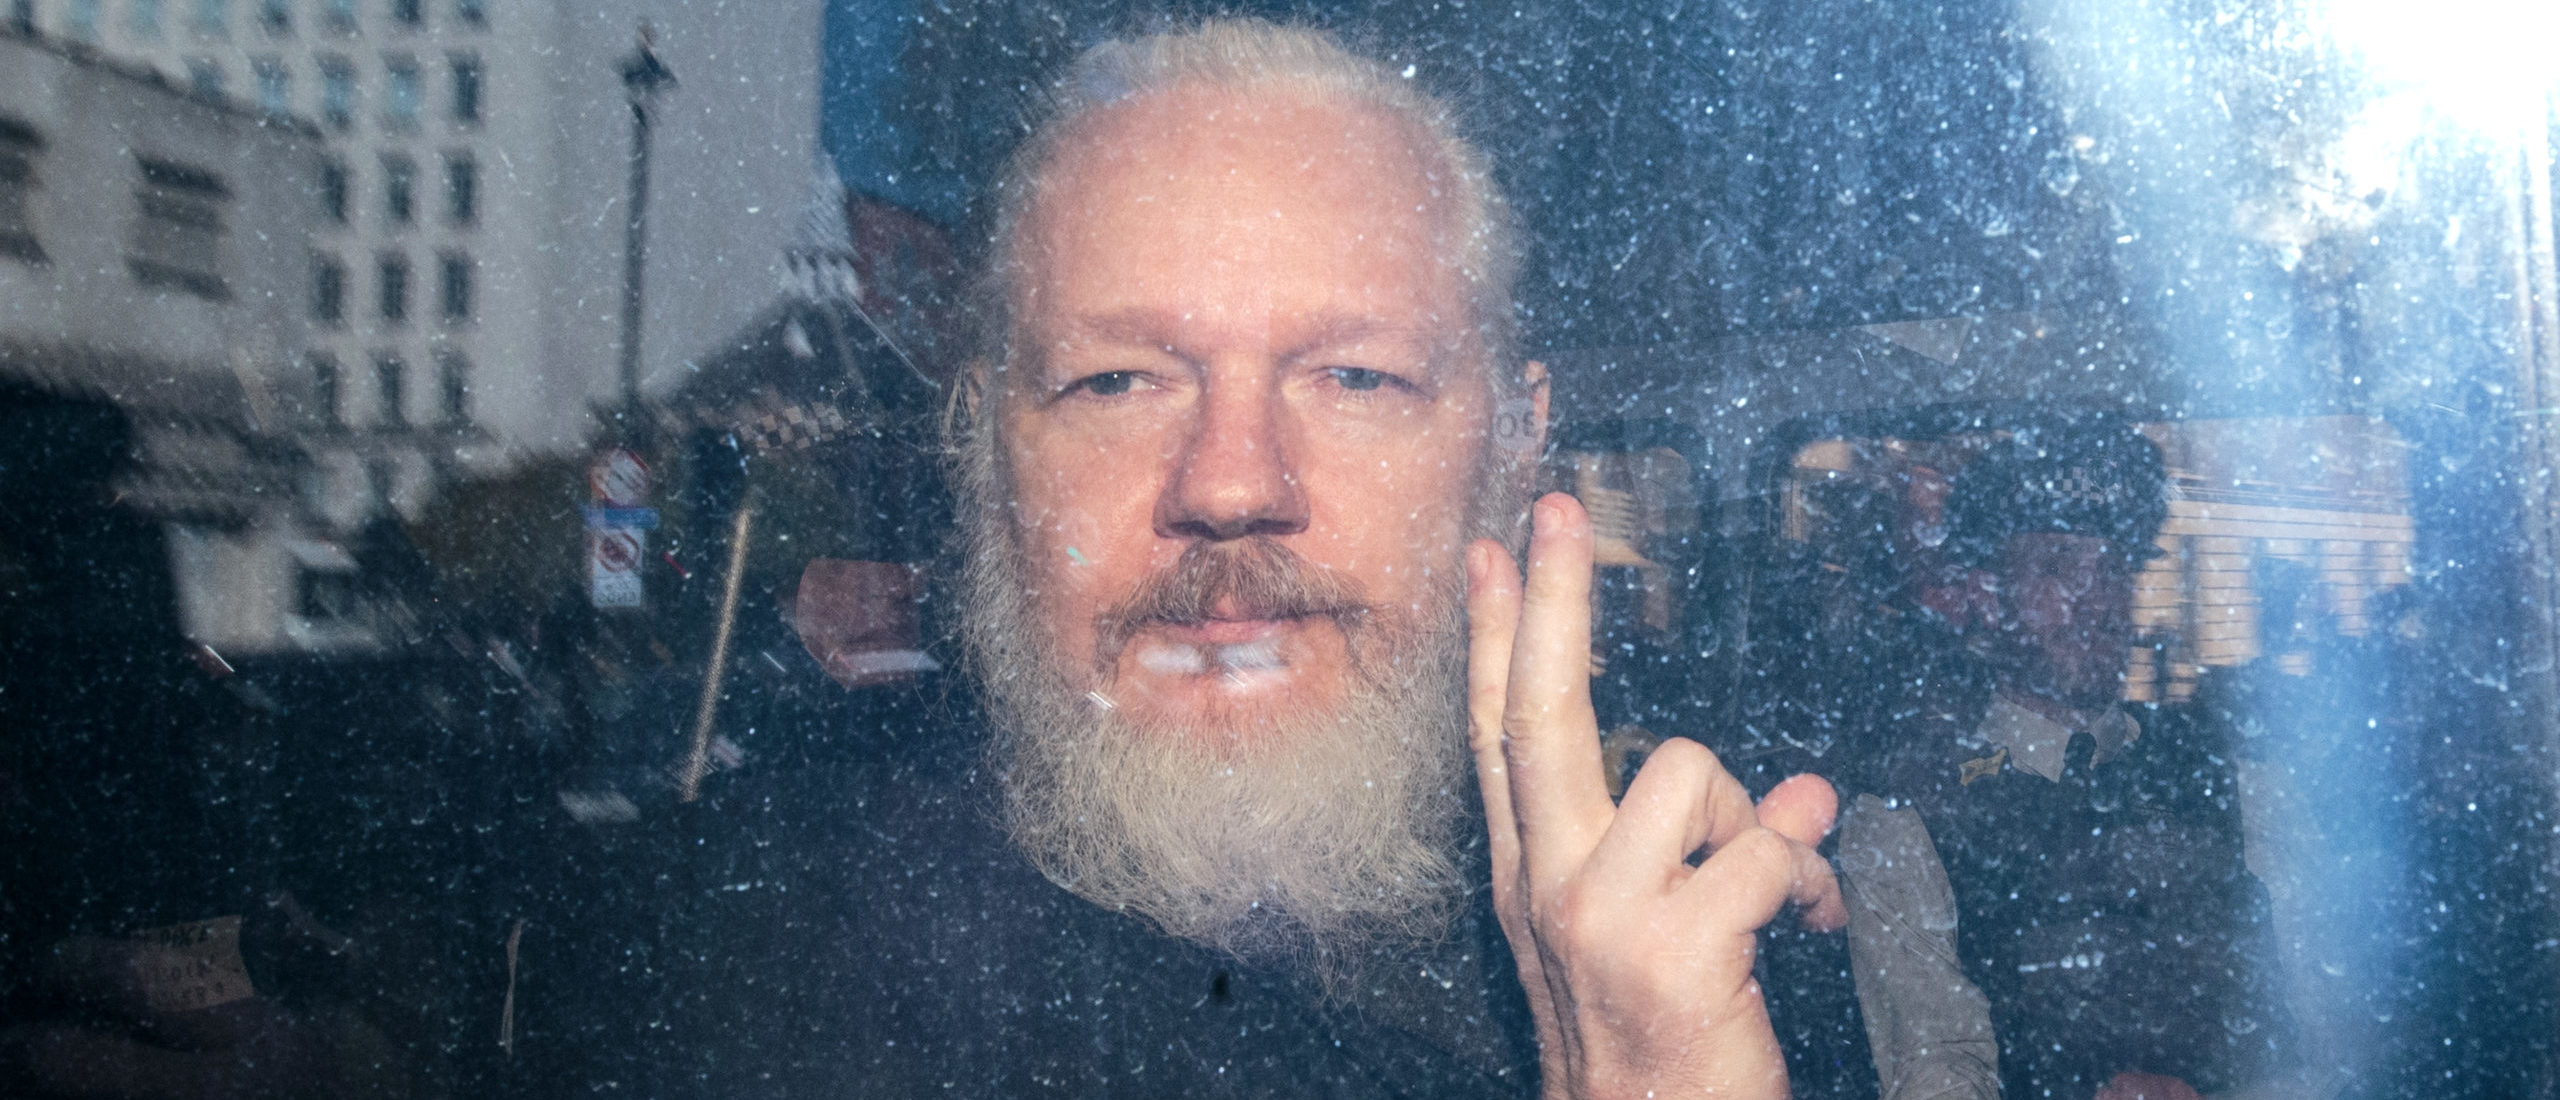 US Wins Appeal In Case To Extradite Wikileaks Founder Julian Assange